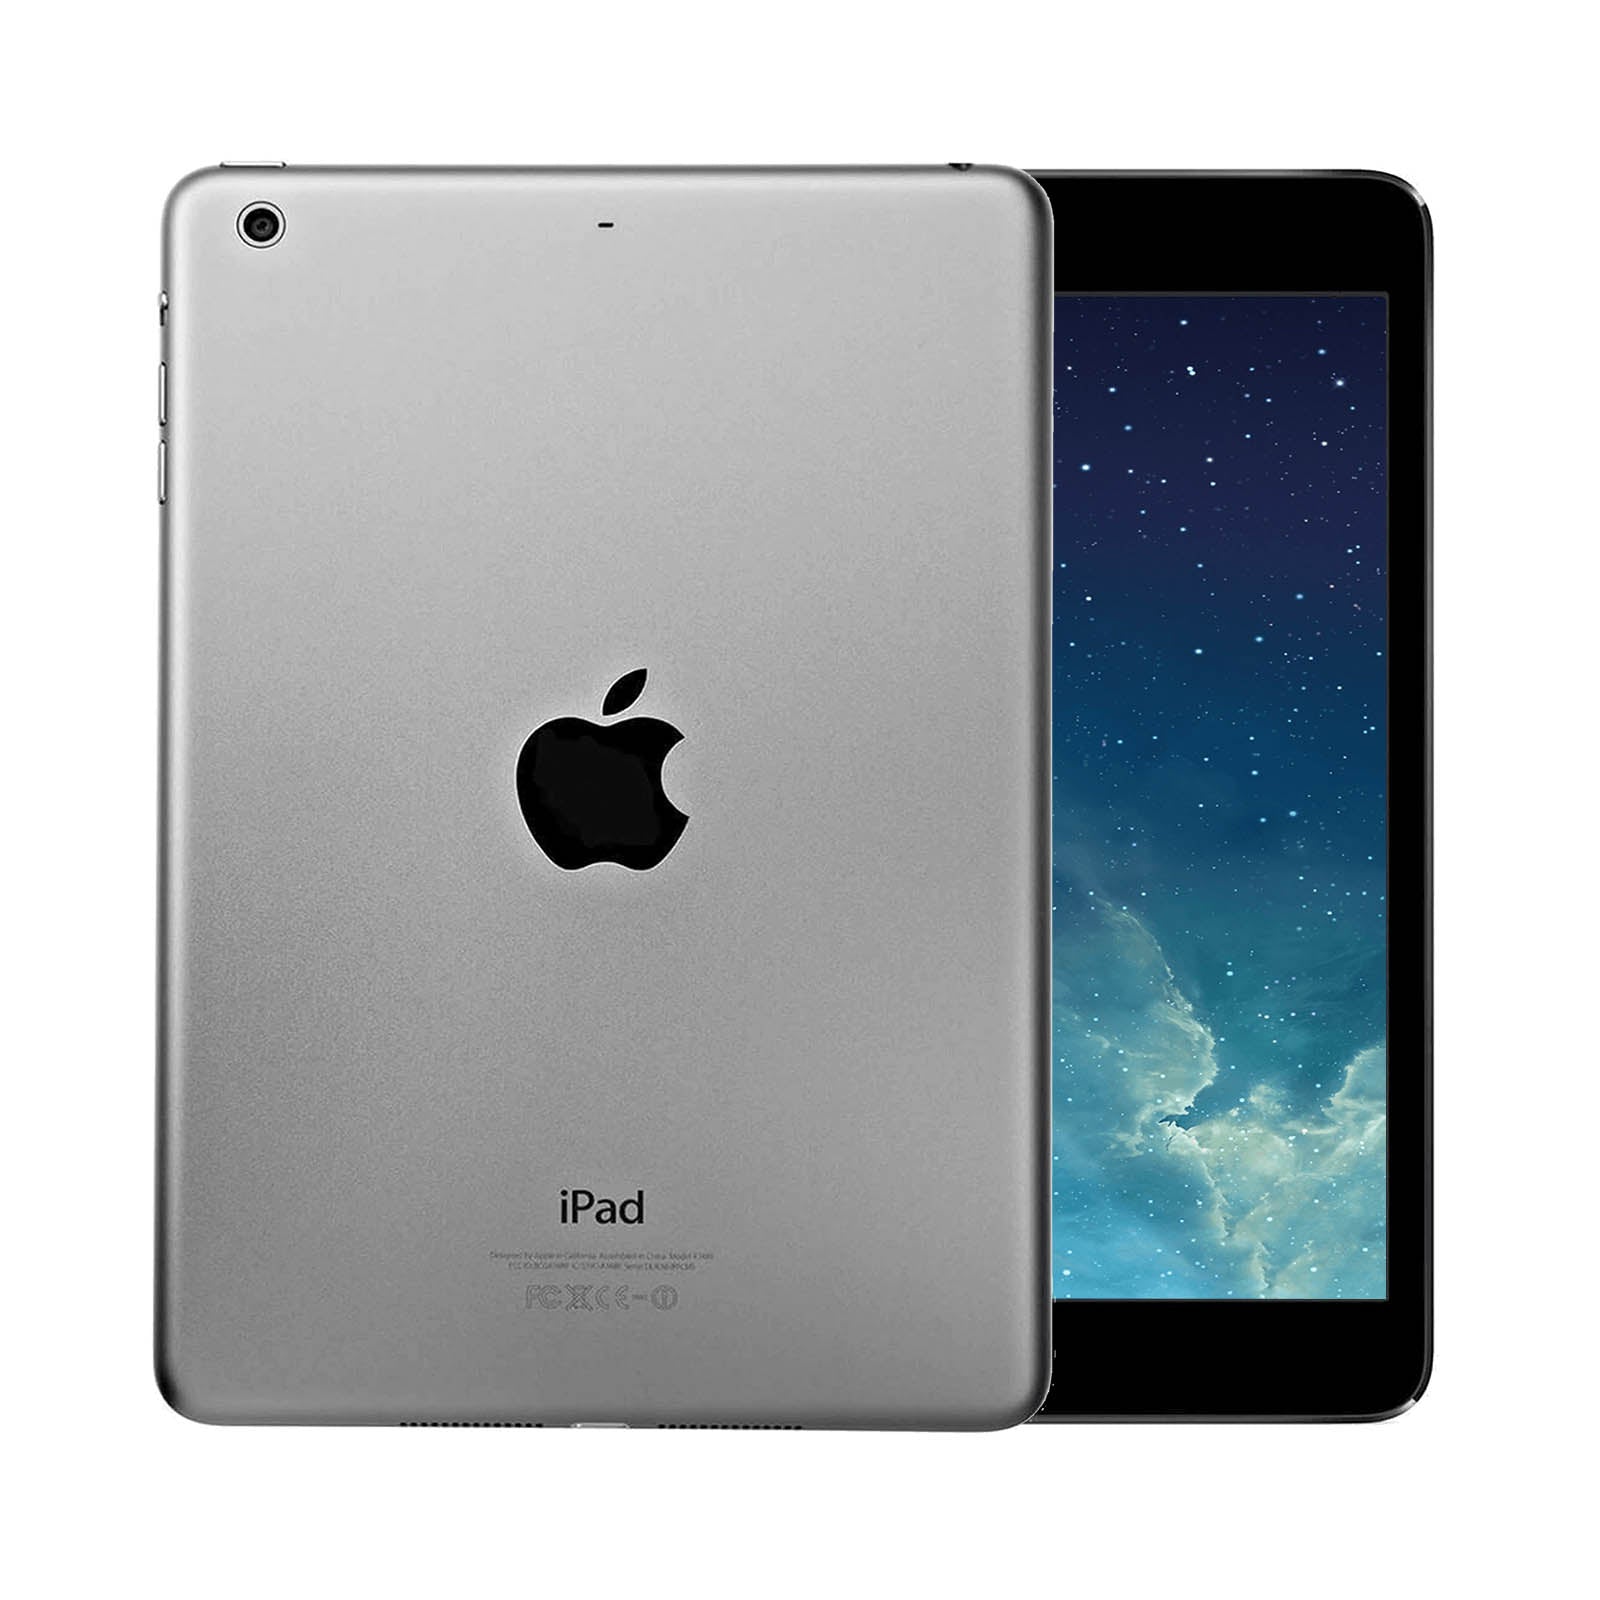 Apple iPad Air 16GB WiFi - Space Grey – Loop Mobile - AU